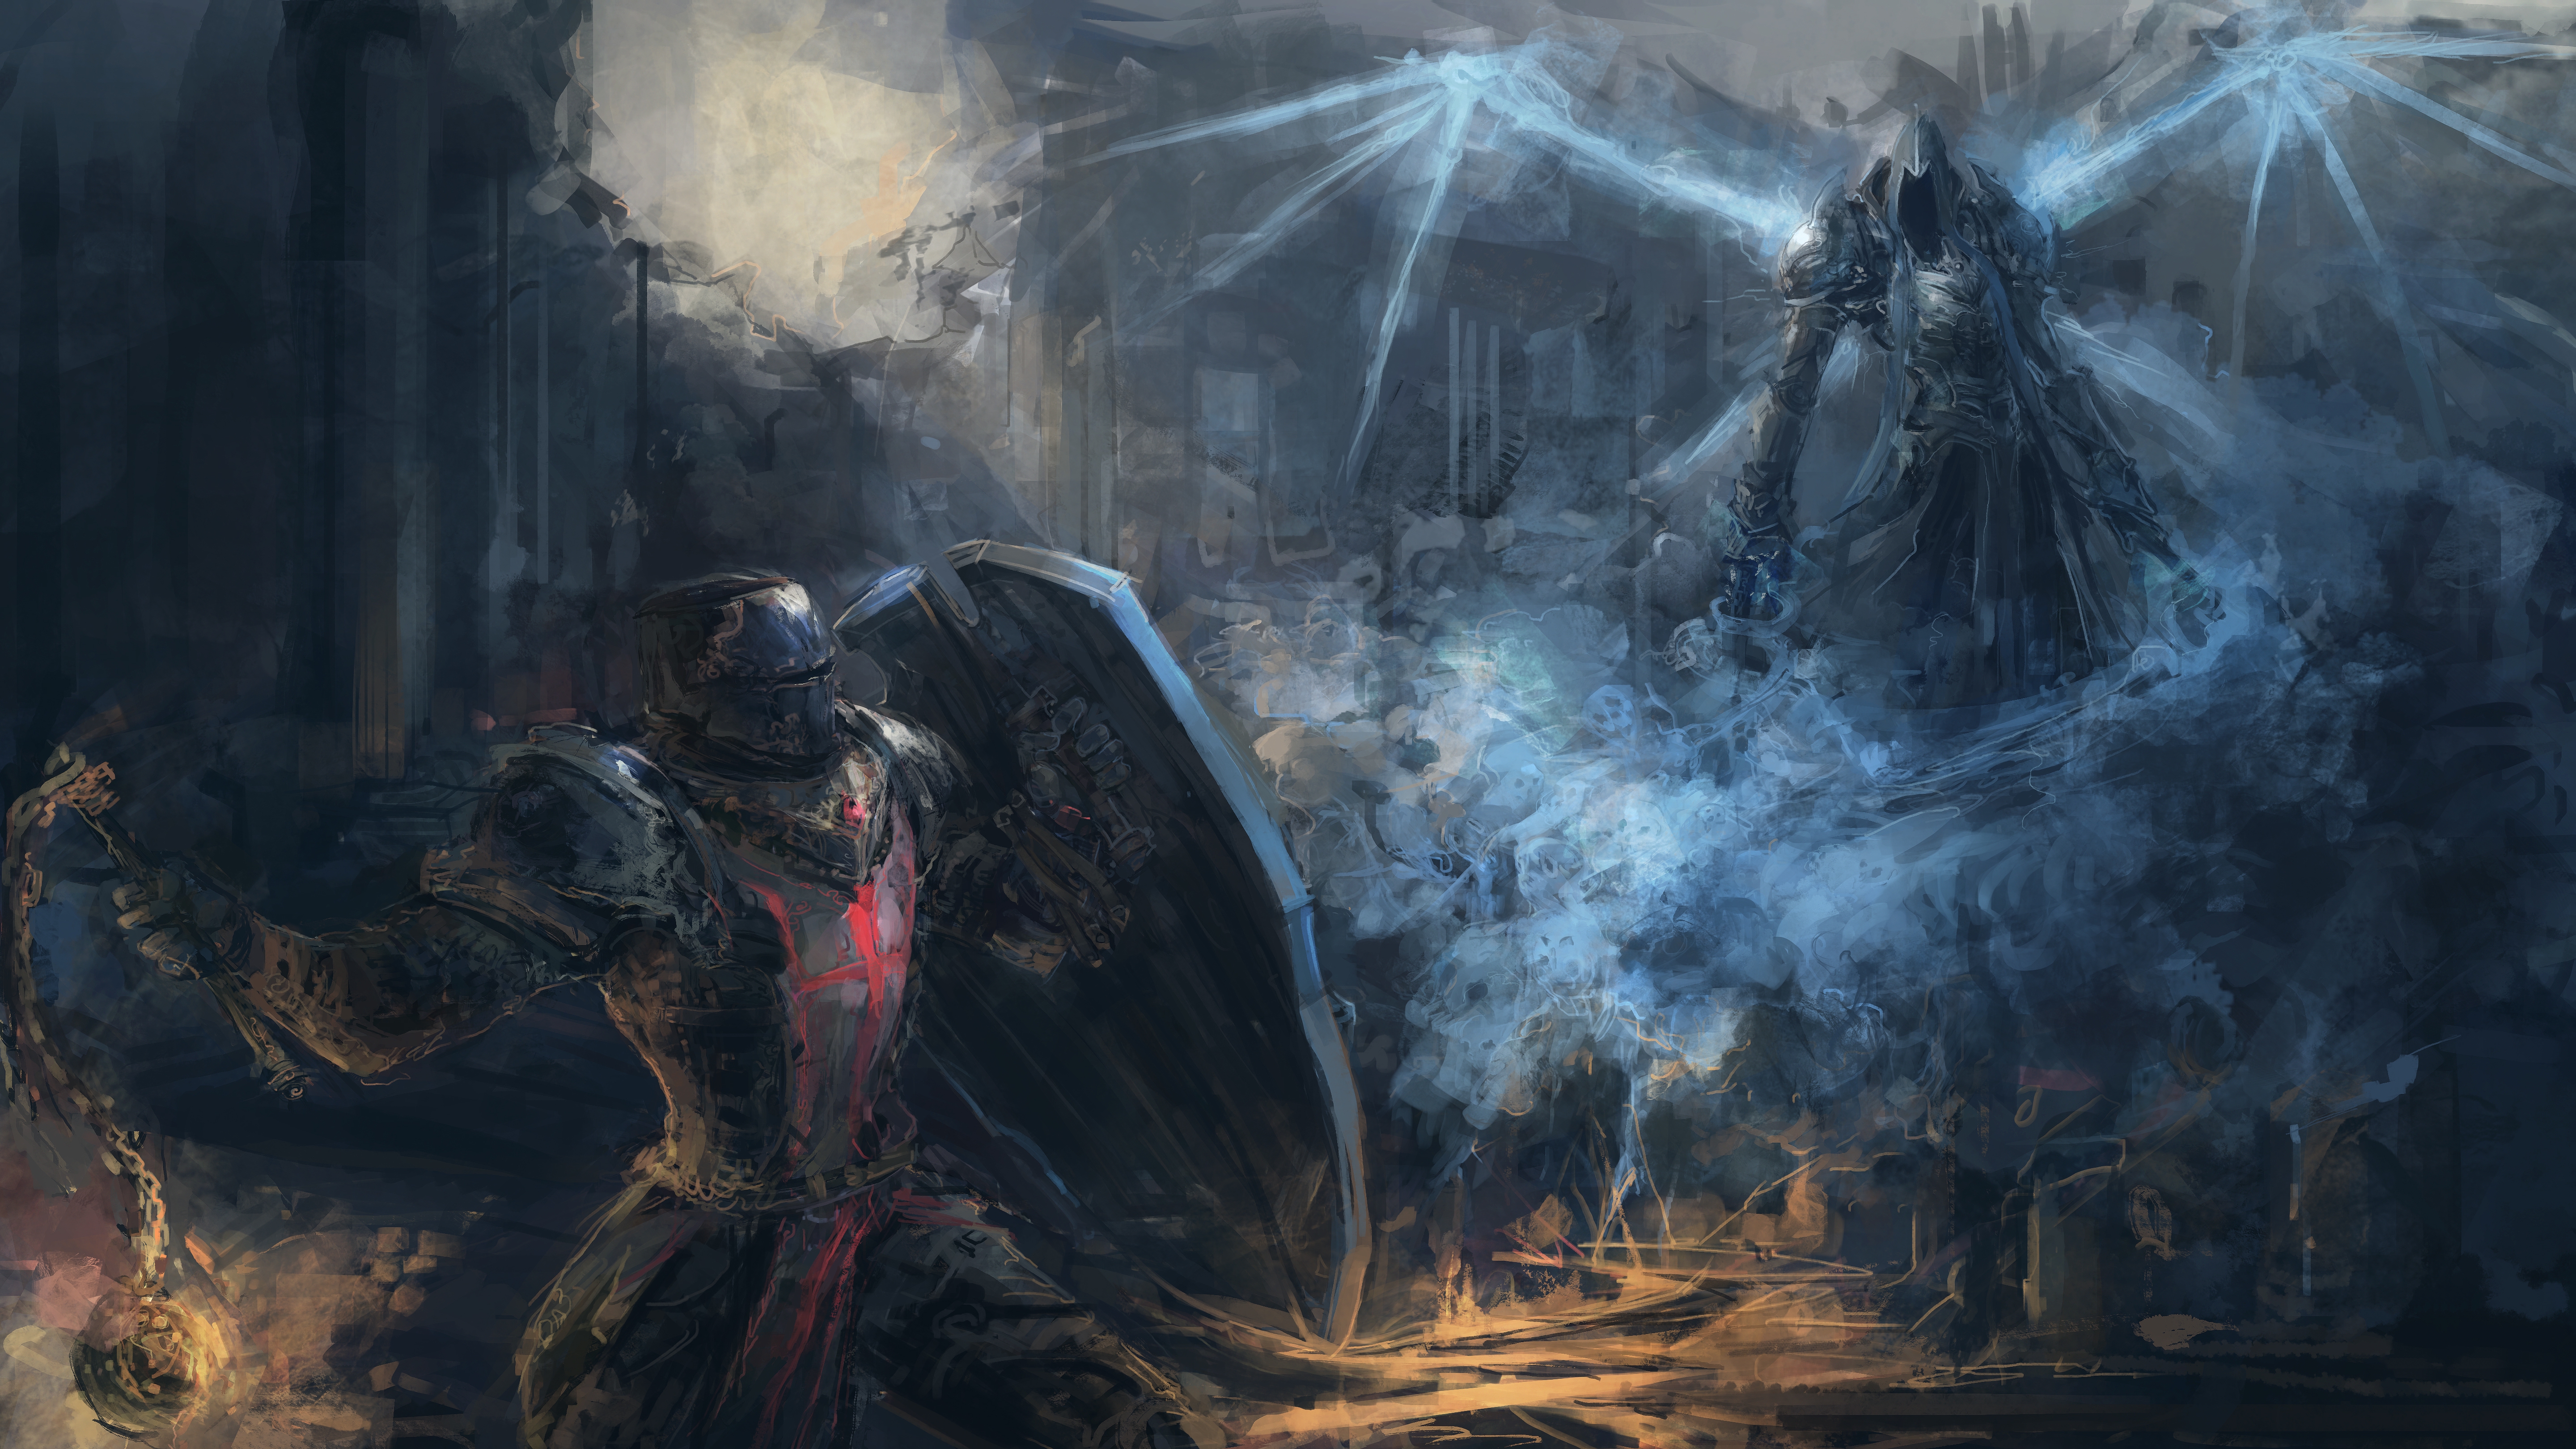 Diablo III: Reaper Of Souls 4k Ultra HD Wallpaper by Jason Nguyen